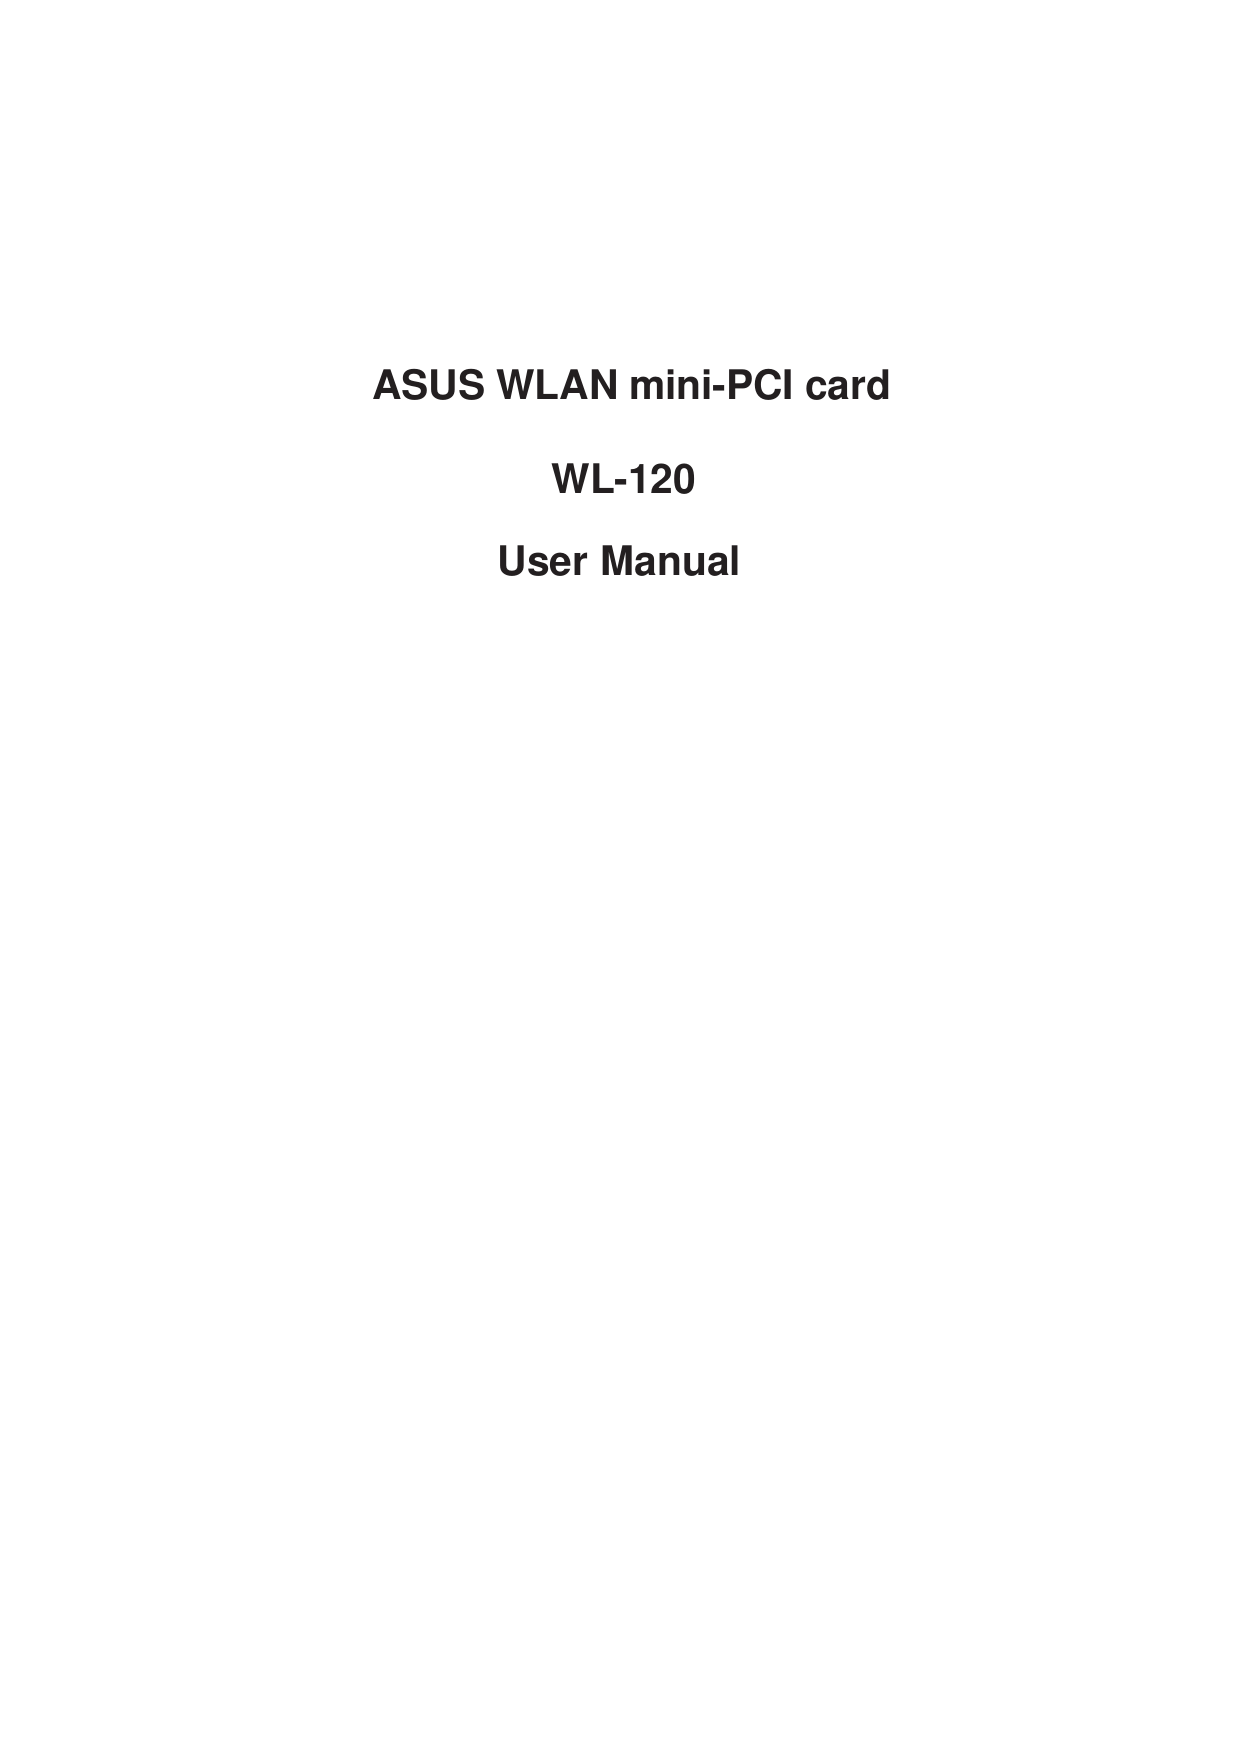   ASUS WLAN mini-PCI cardWL-120            User Manual 